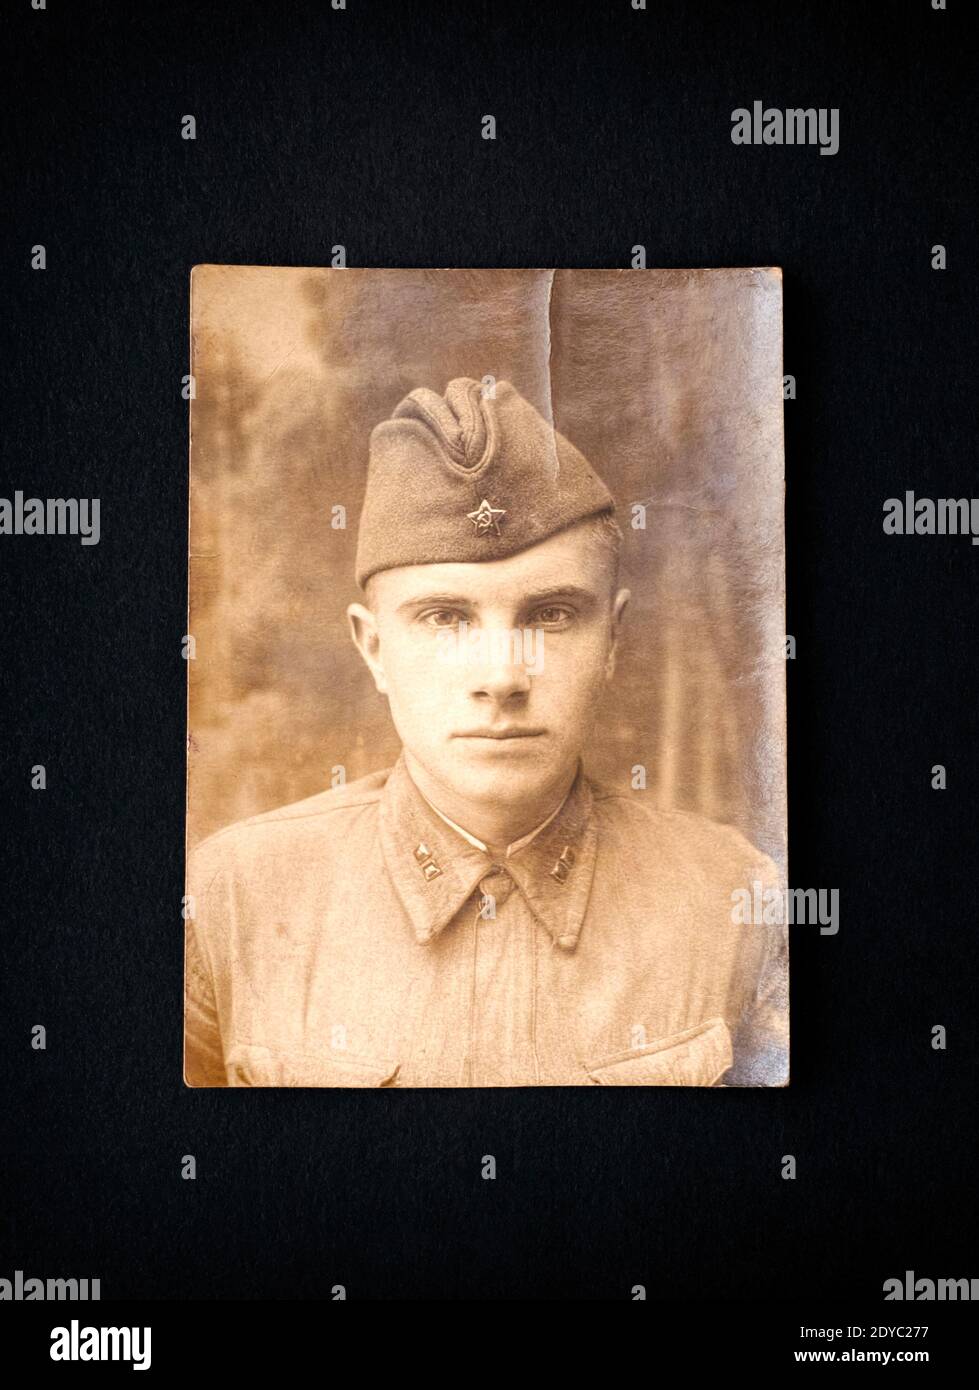 Portrait photo vintage d'un soldat de l'Armée rouge russe. La photo a été prise au début de la Grande Guerre patriotique (Seconde Guerre mondiale). Photo rétro de ma propre co Banque D'Images